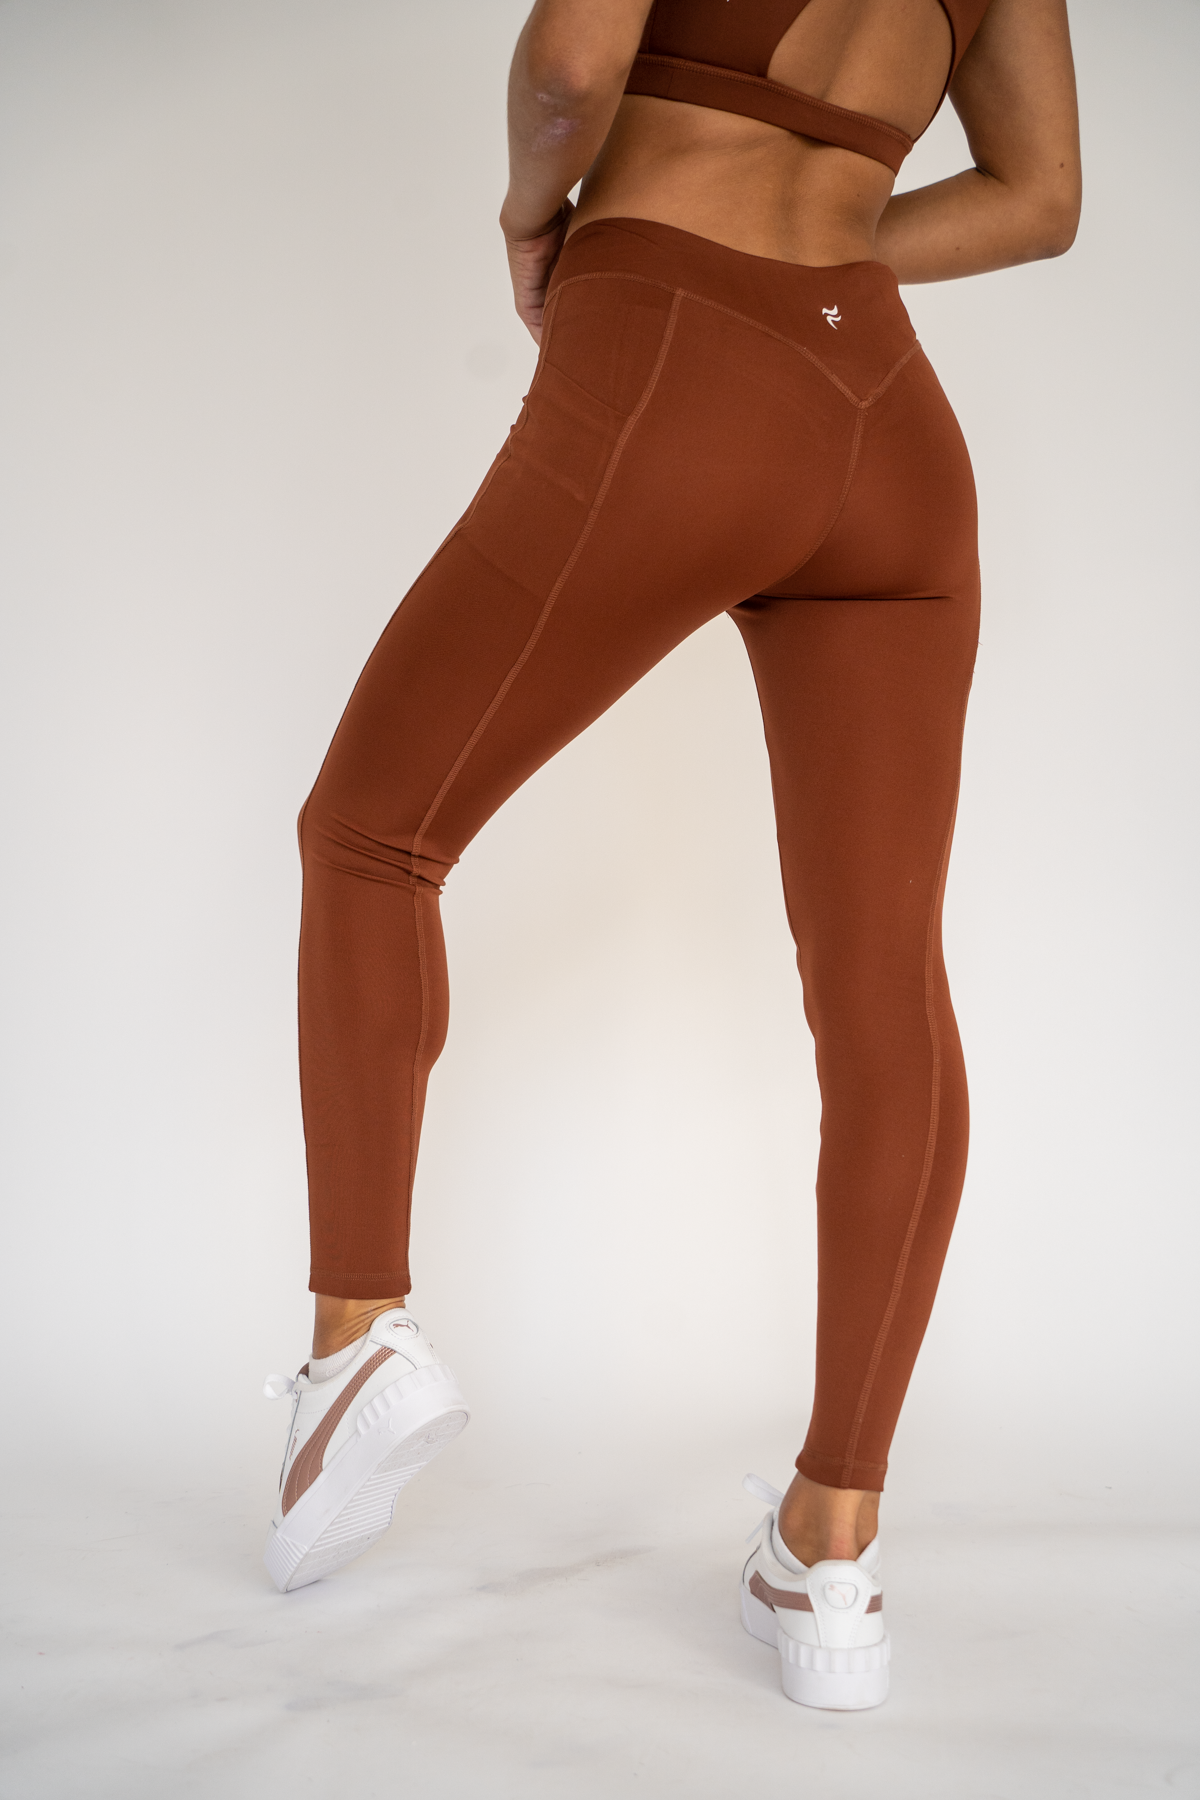 Kiara Crossover Leggings Tan Brown XS S M L XL